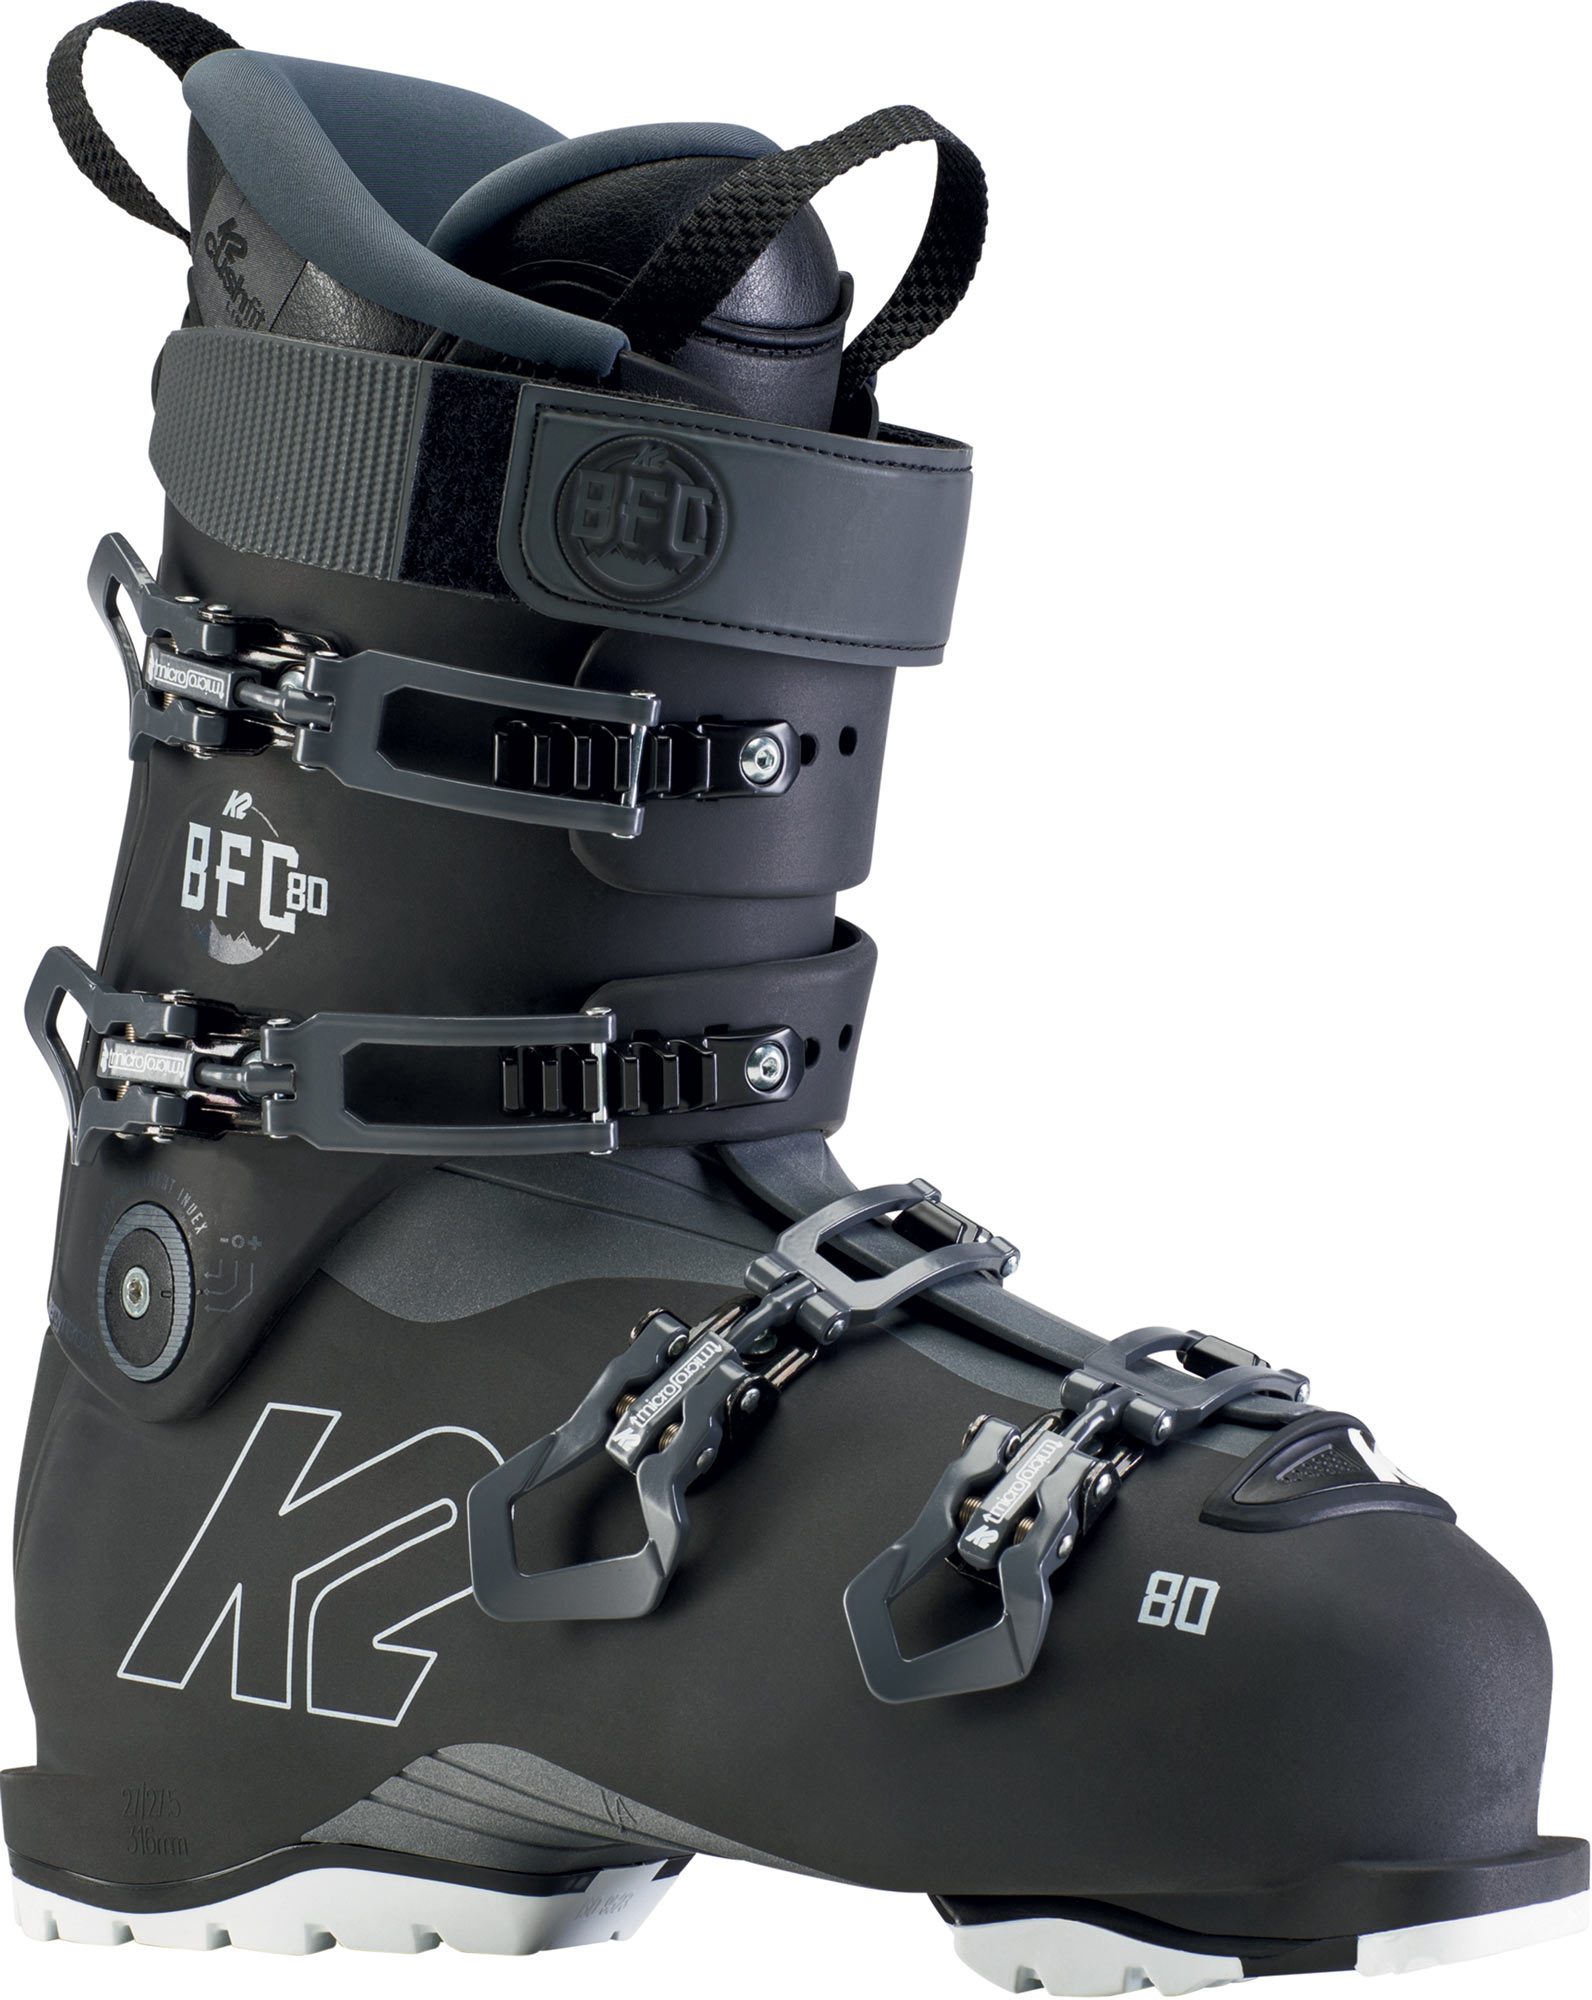 Ski all-mountain boots